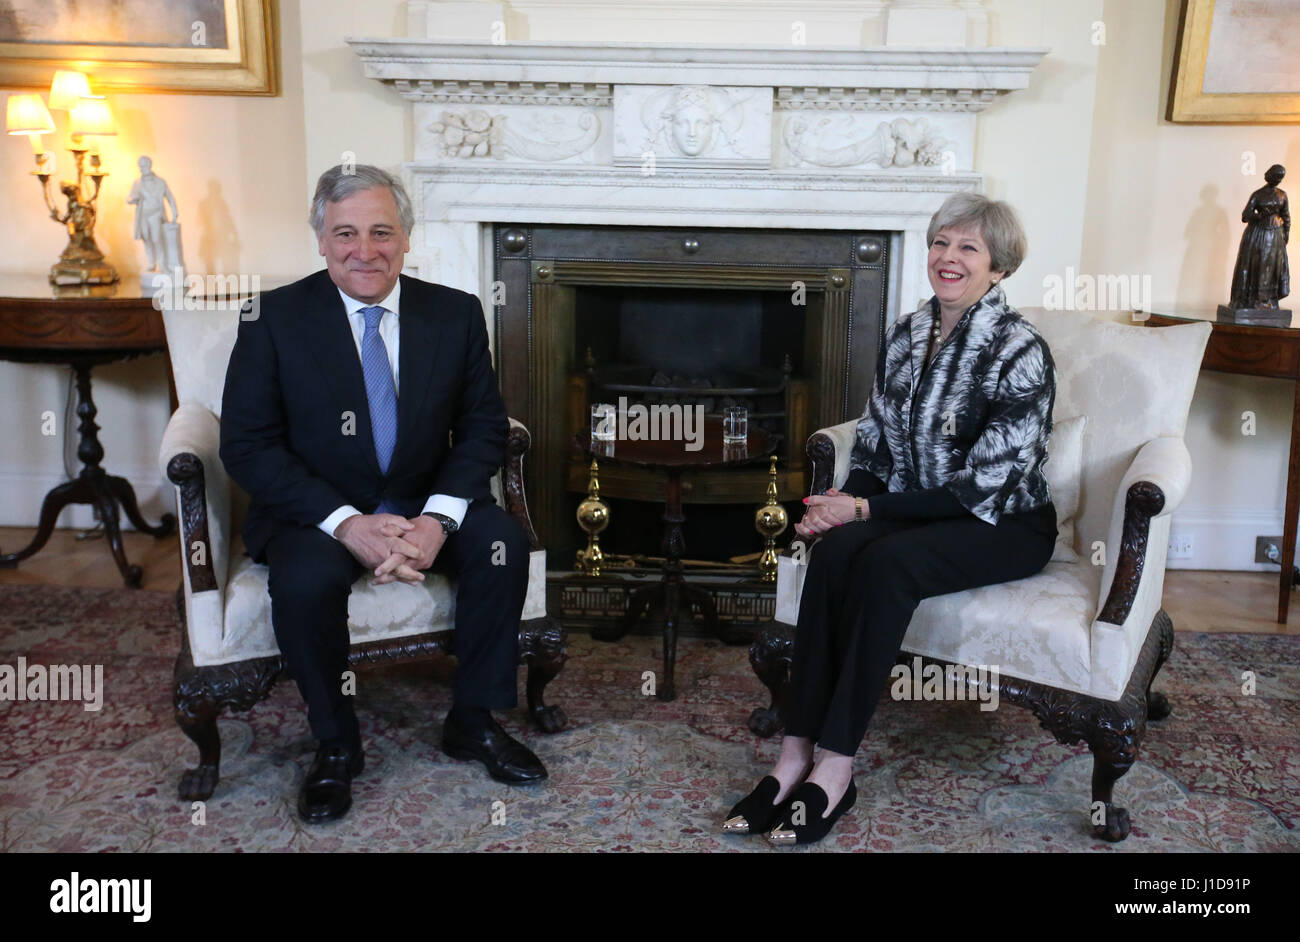 Il Presidente del Parlamento europeo Antonio Tajani a parlare con il Primo Ministro Theresa Maggio in occasione di un incontro a 10 Downing Street, Londra. Foto Stock